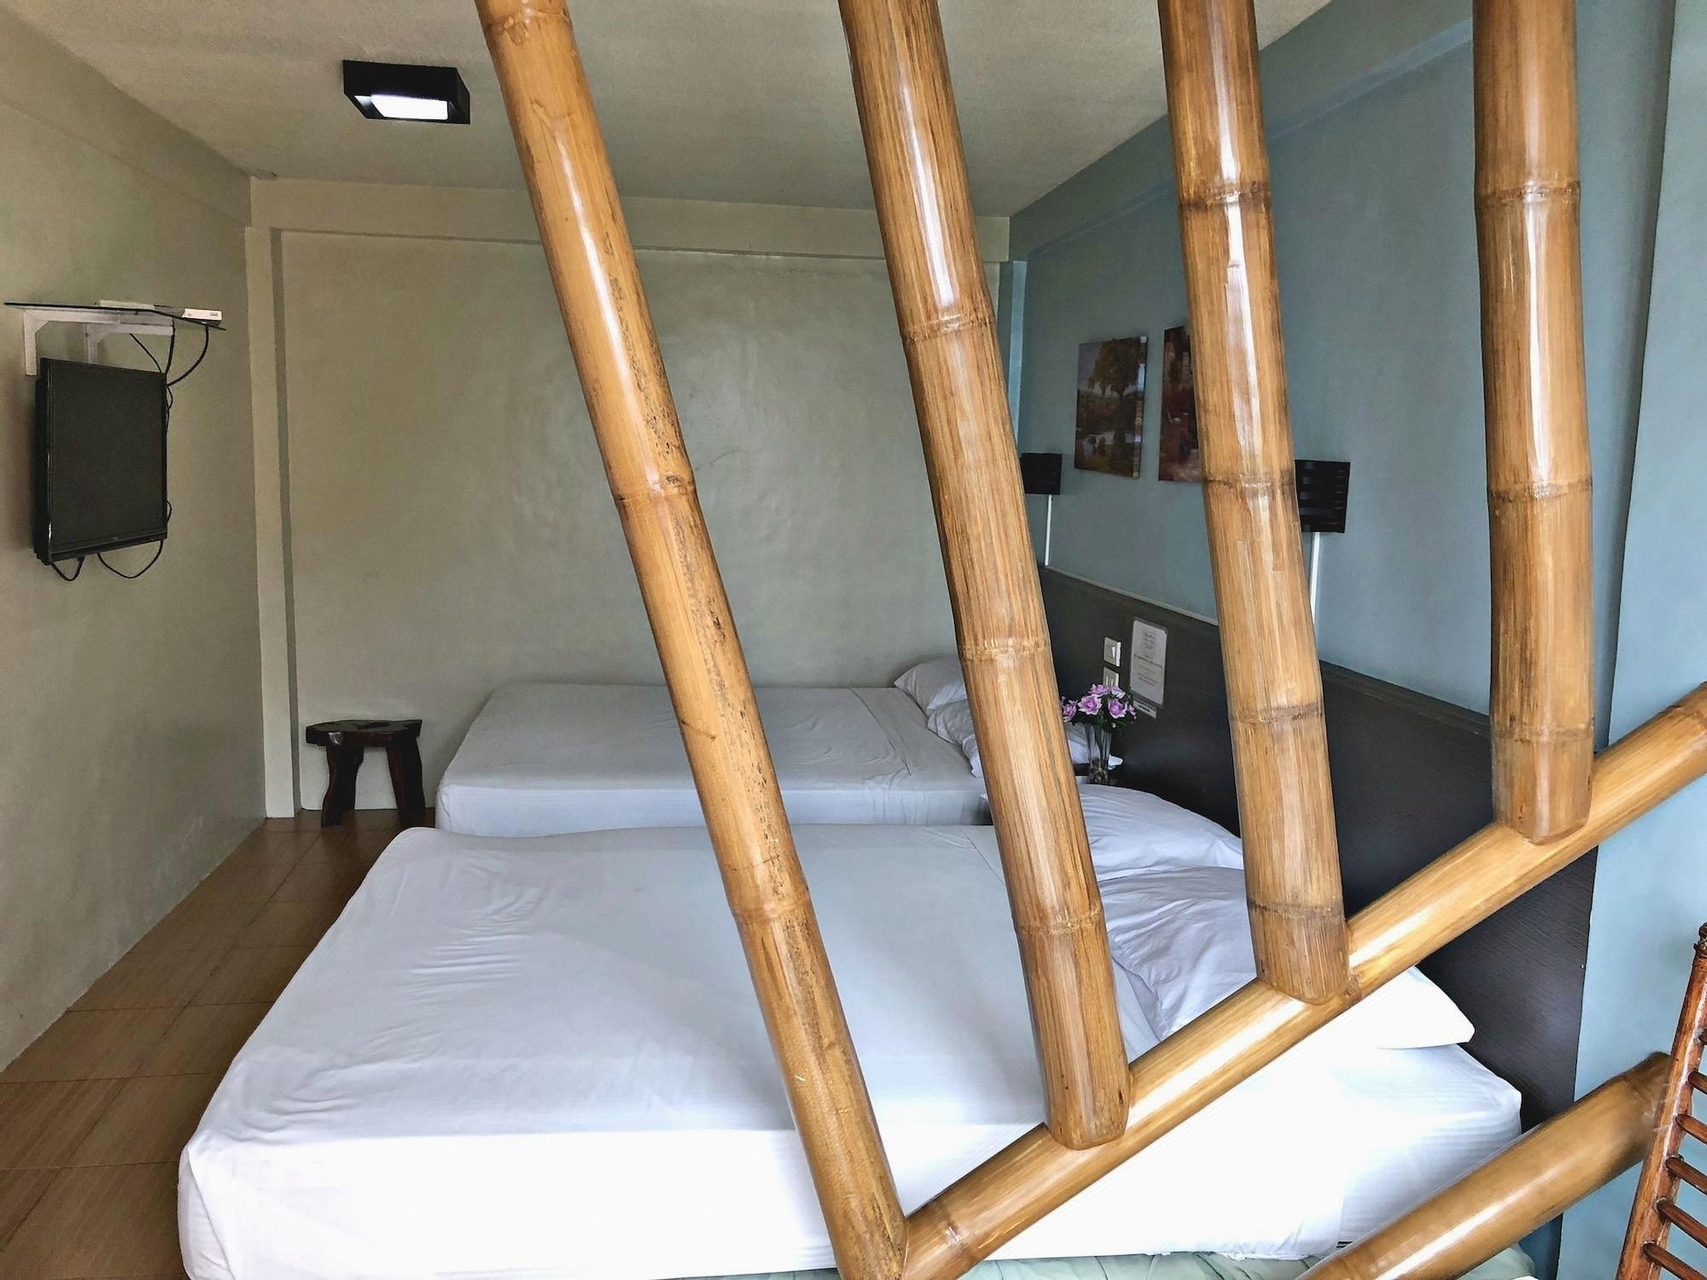 Bedroom 1, Pura Vida Villas, Tagaytay City